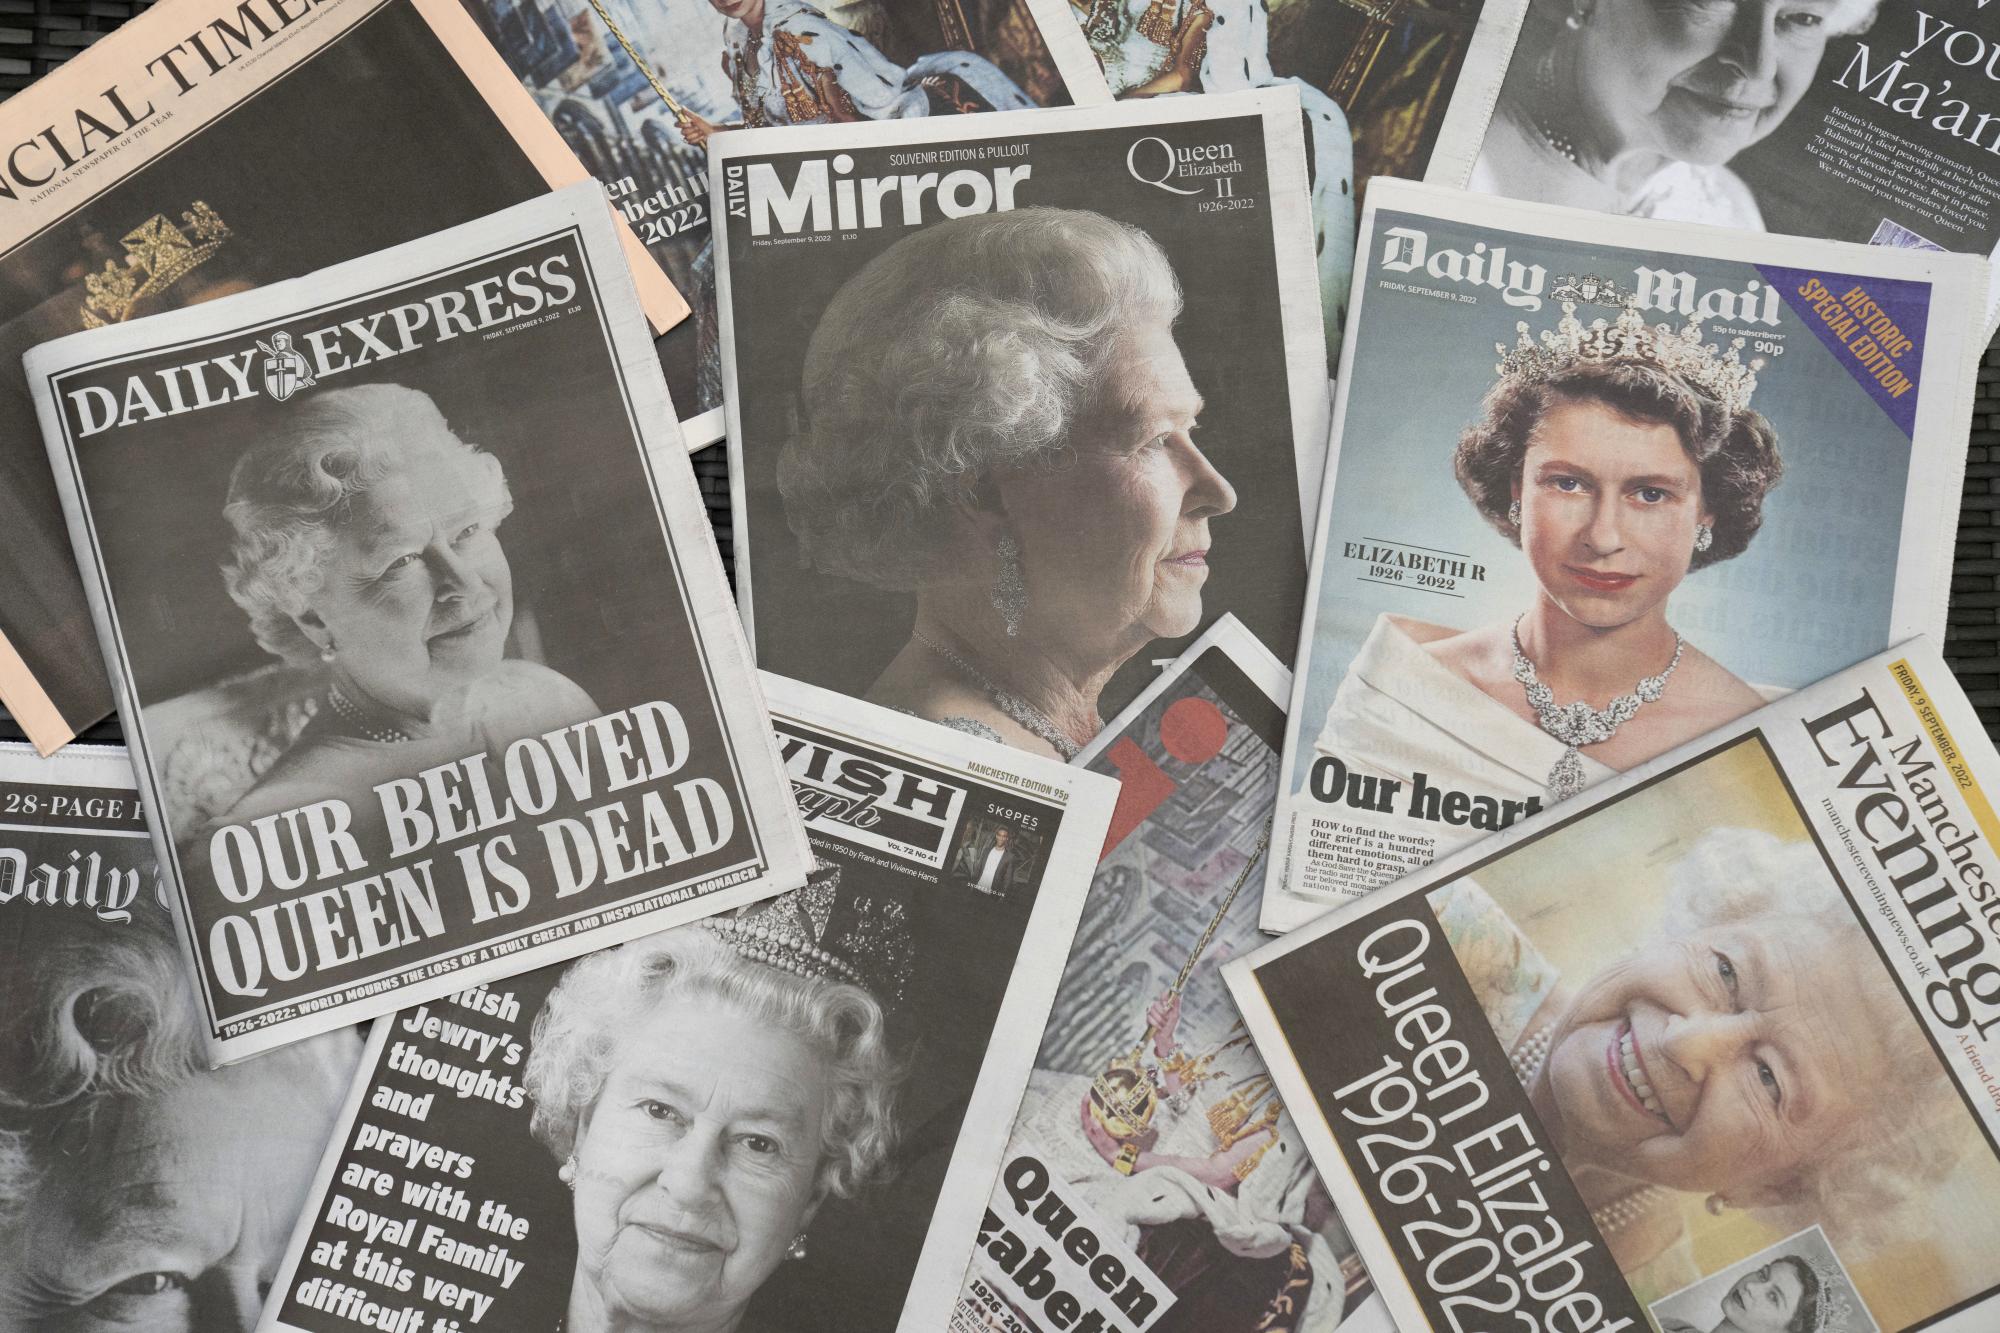 $!El jueves 8 de septiembre de 2022 la reina Isabel II, la monarca con el reinado más largo de Gran Bretaña, falleció a los 96 años.